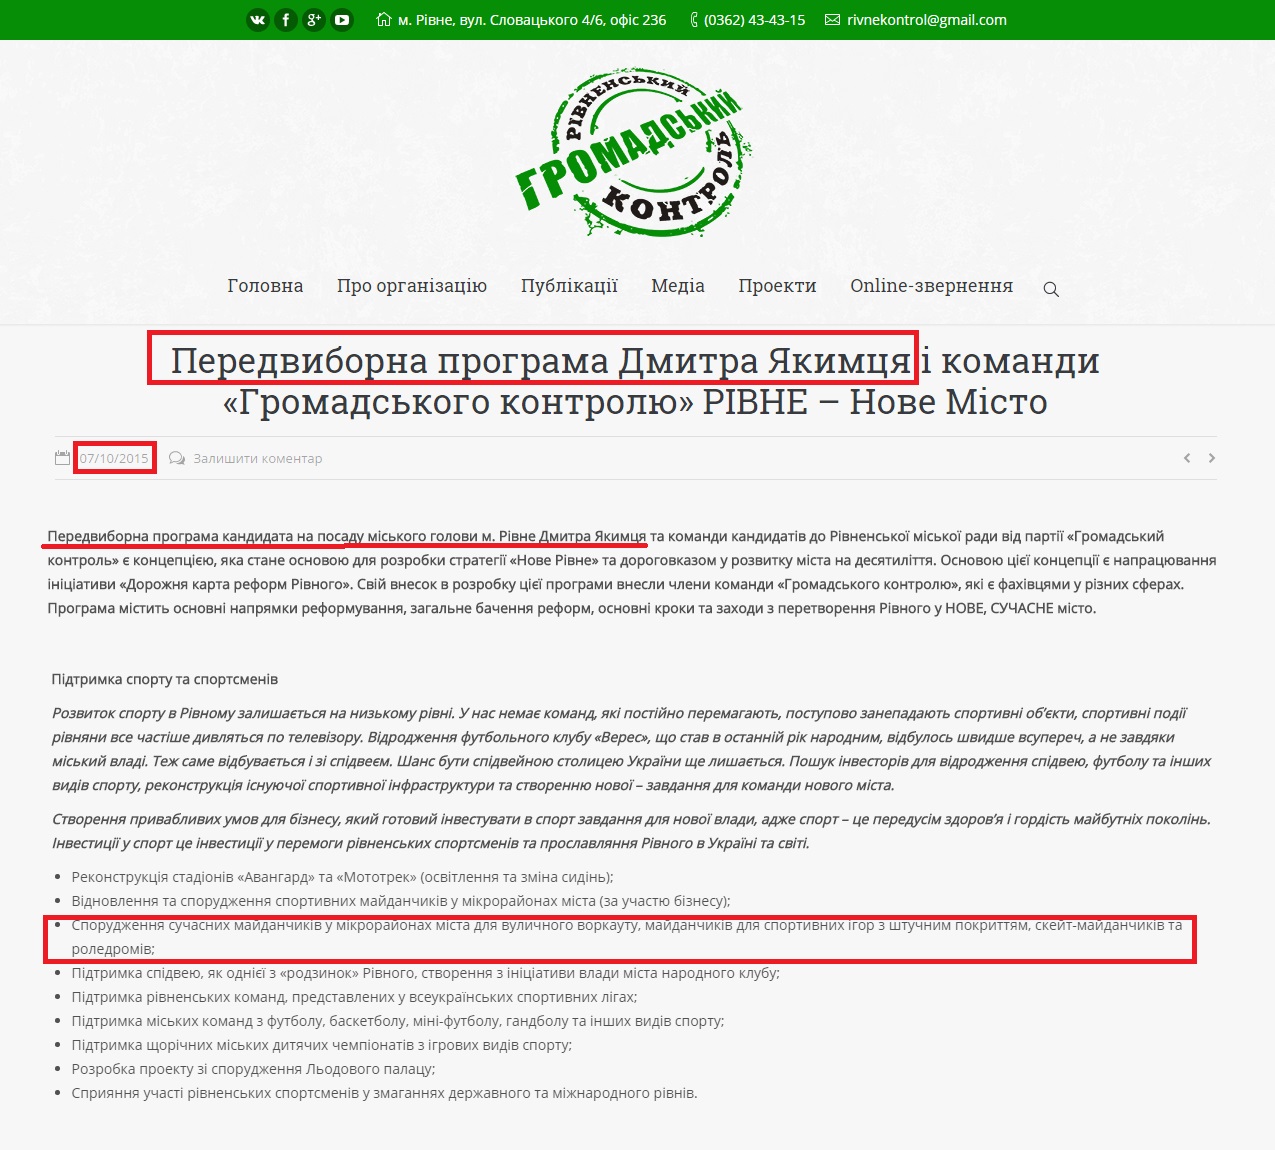 http://rgk.rv.ua/announcementnews/peredvyborna-programa-dmytra-yakymtsya-i-komandy-gromadskogo-kontrolyu-rivne-nove-misto